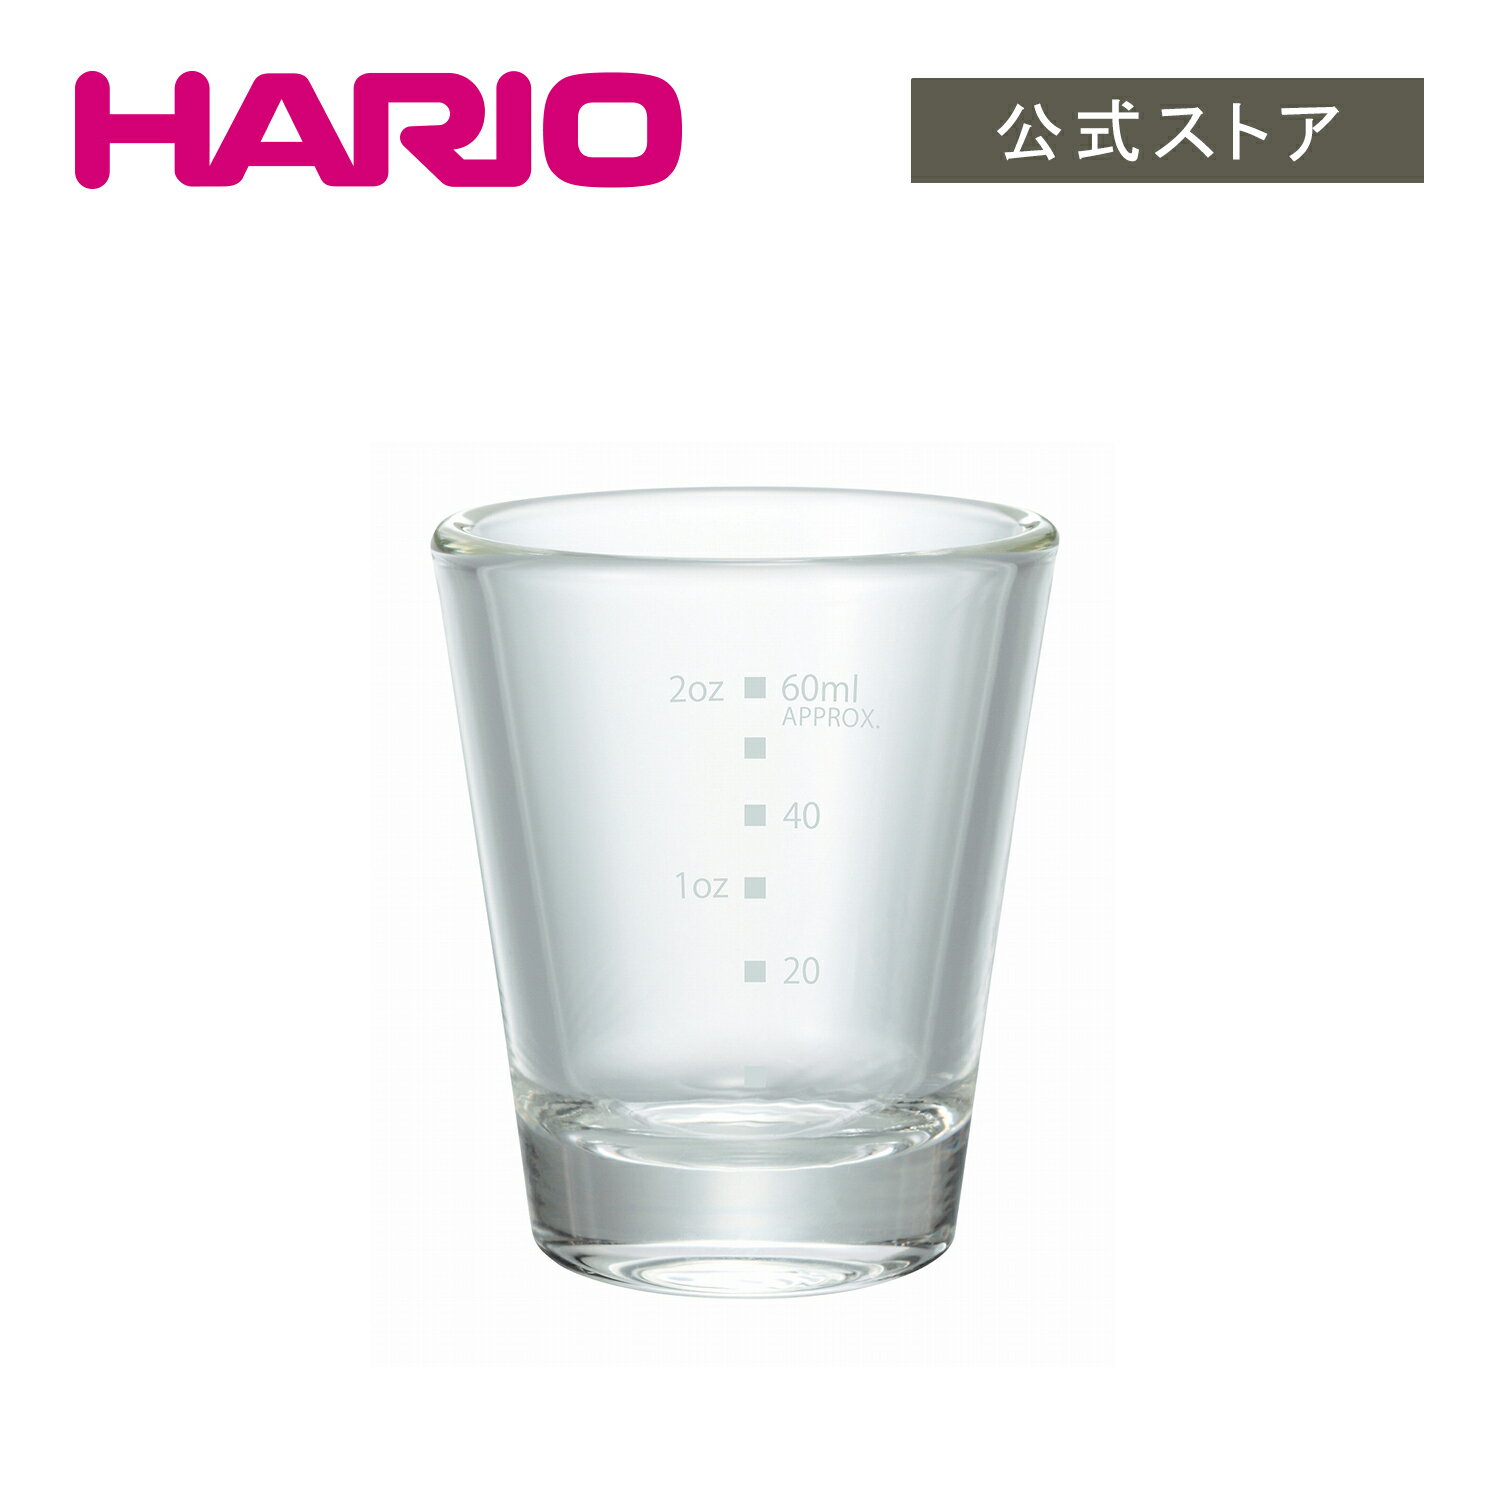 HARIO ショットグラス ハリオ 耐熱グラス コップ おしゃれ かっこいい ショットグラス ウィスキー お酒 持ちやすい オールクリア ガラス 食洗機対応